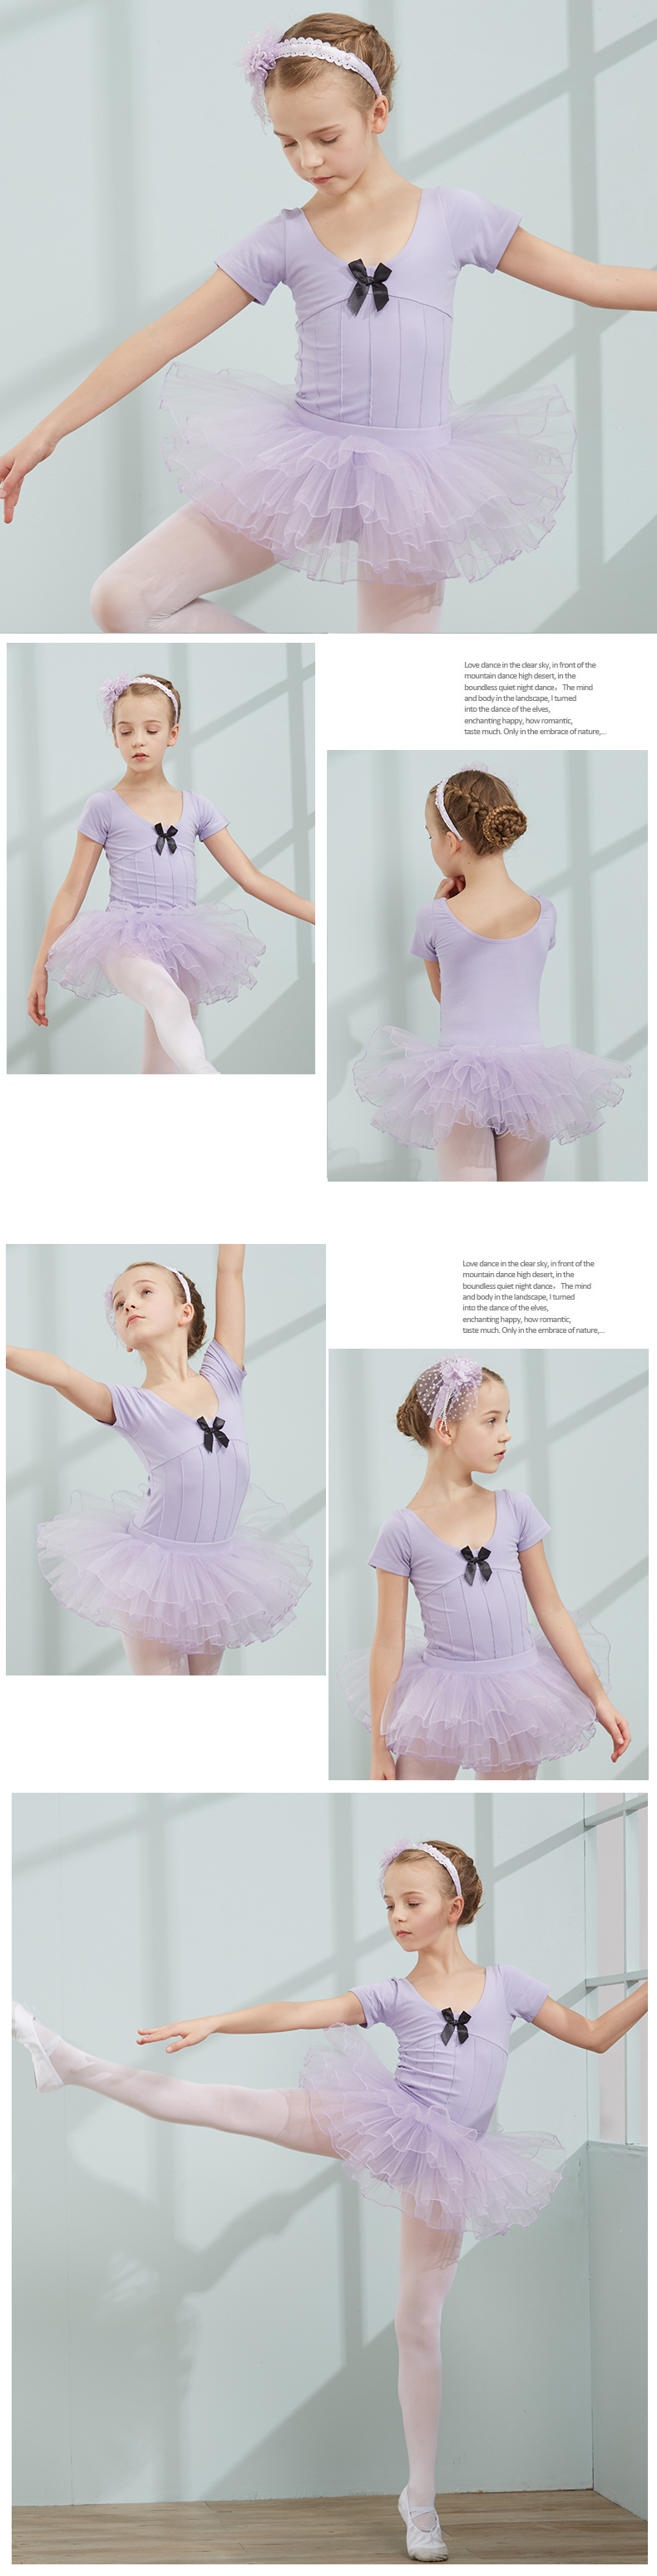 儿童舞蹈服装春夏季女童短袖芭蕾舞考级服幼儿练功服体操服-16.jpg